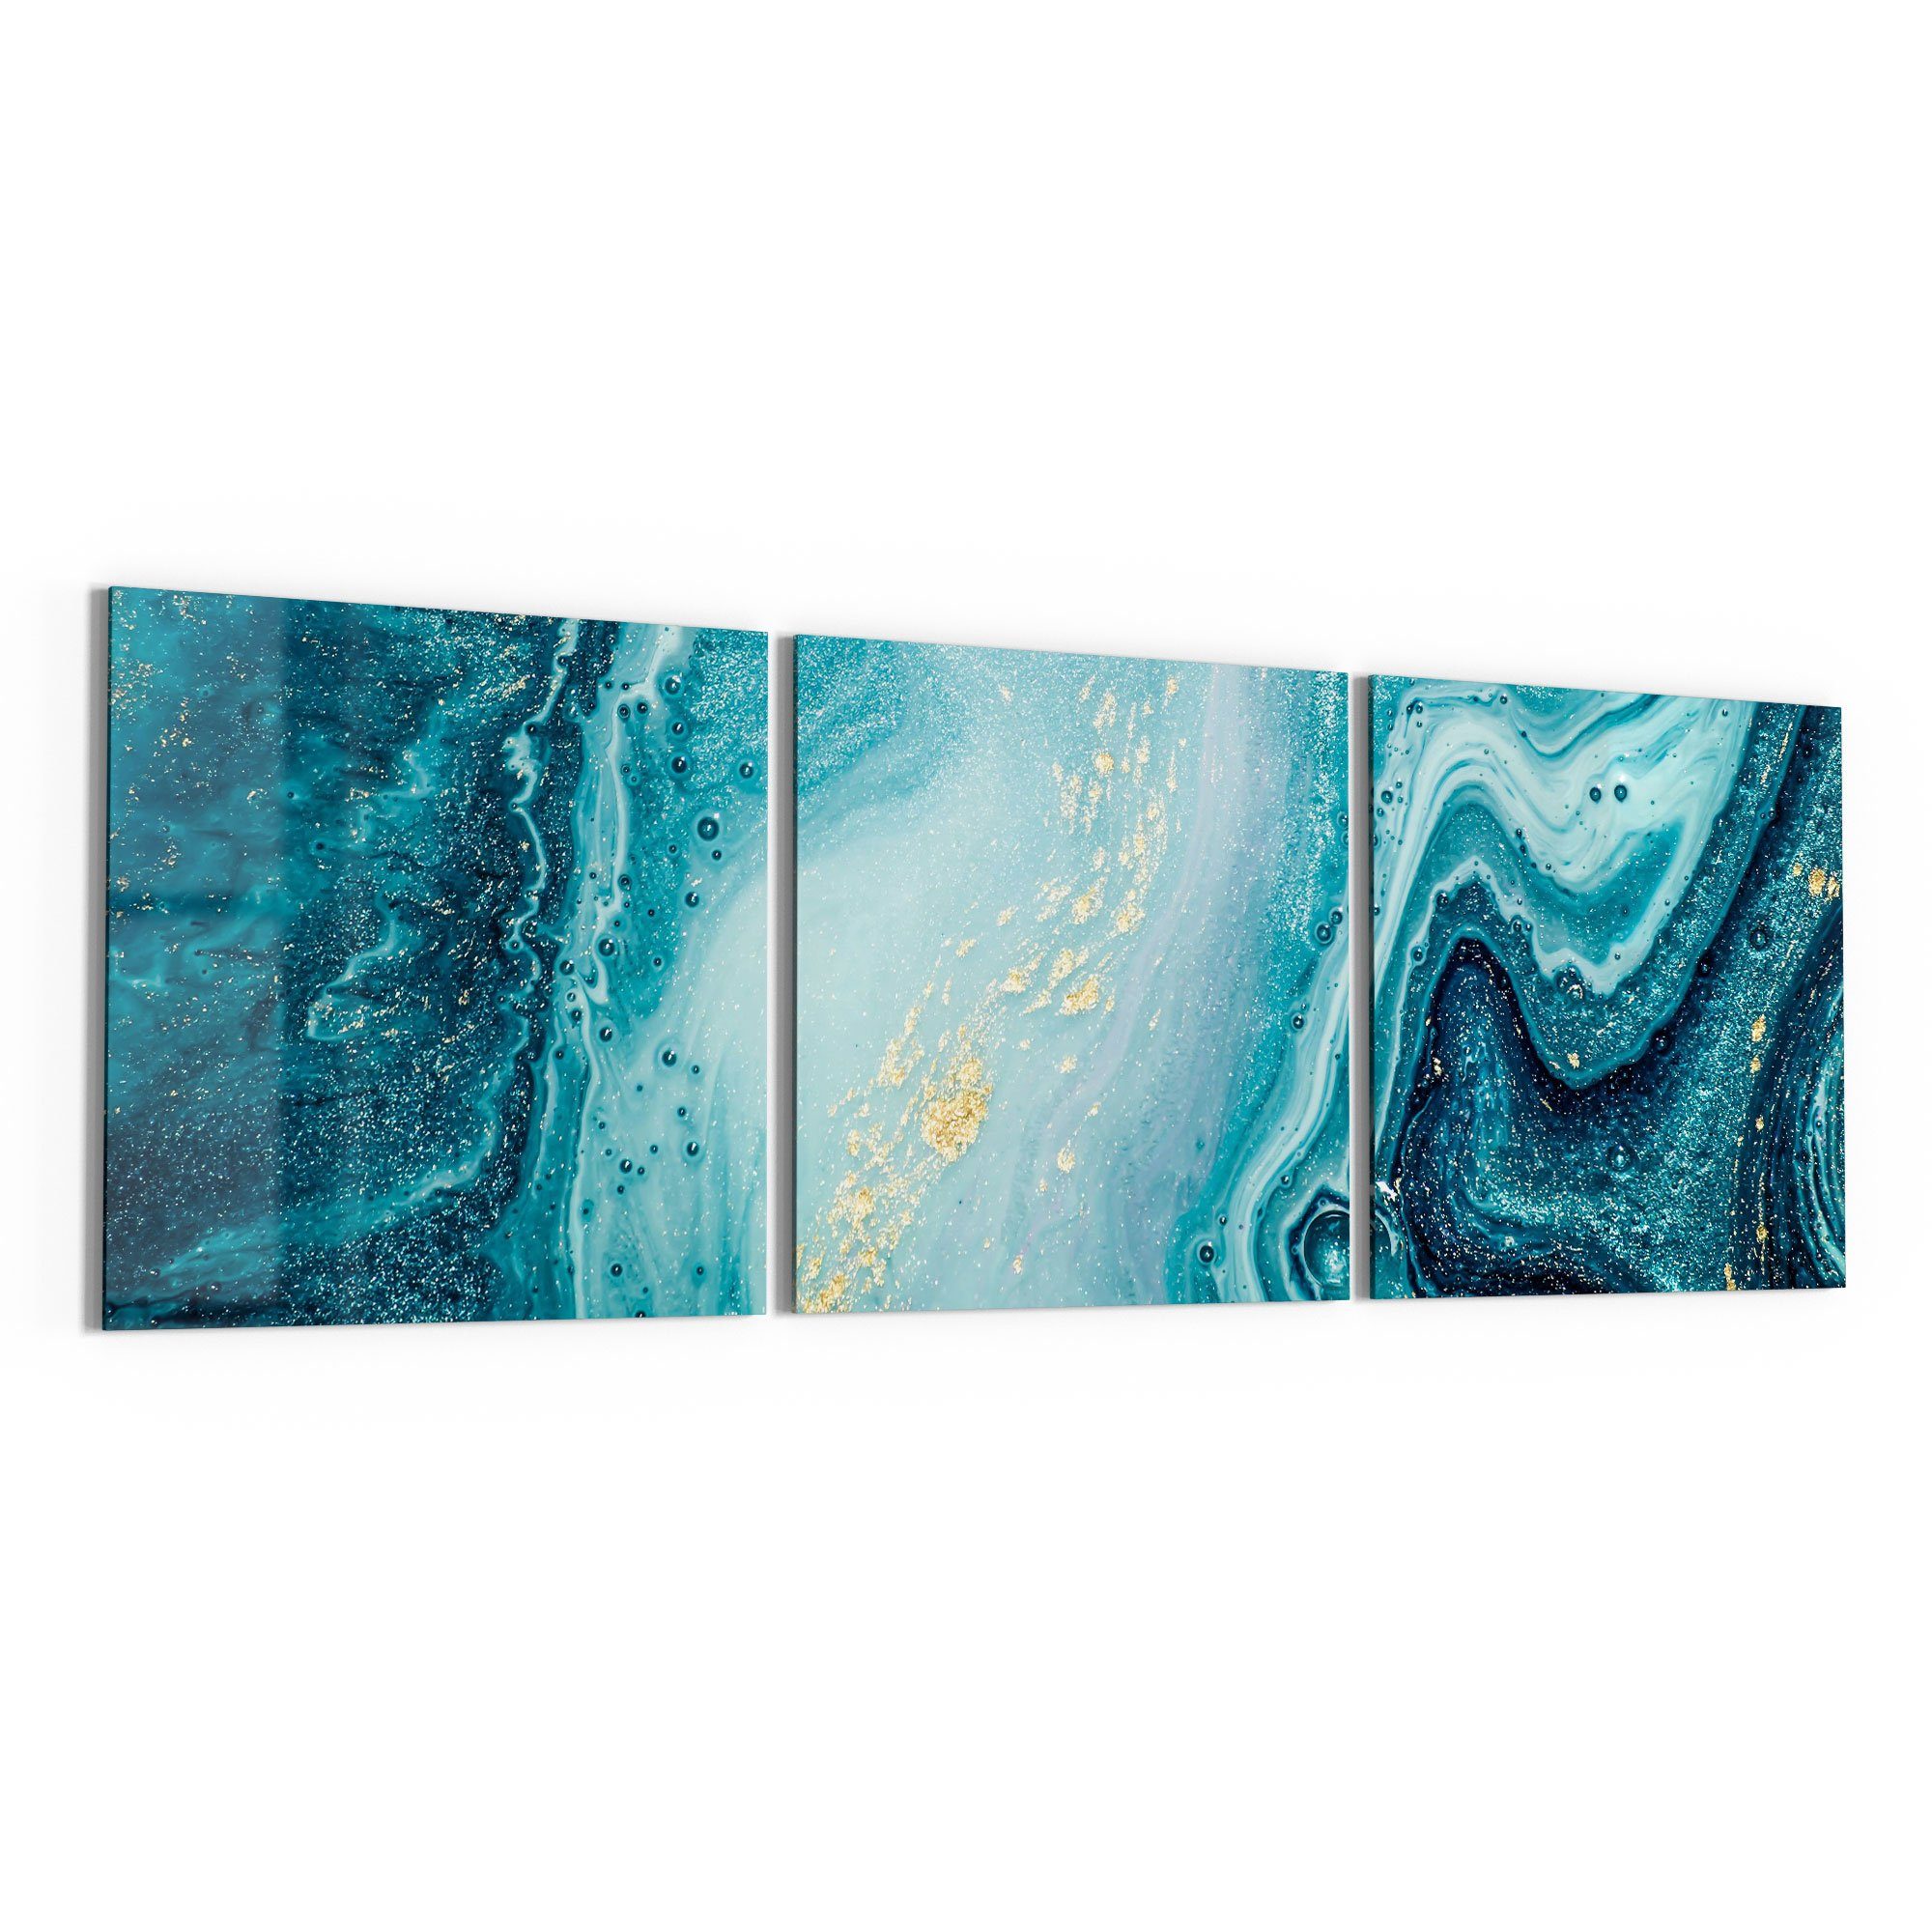 Glasbild modern Bild Wandbild Marmor\', \'Meer \'Meer DEQORI Glas aus aus Marmor\', schwebend